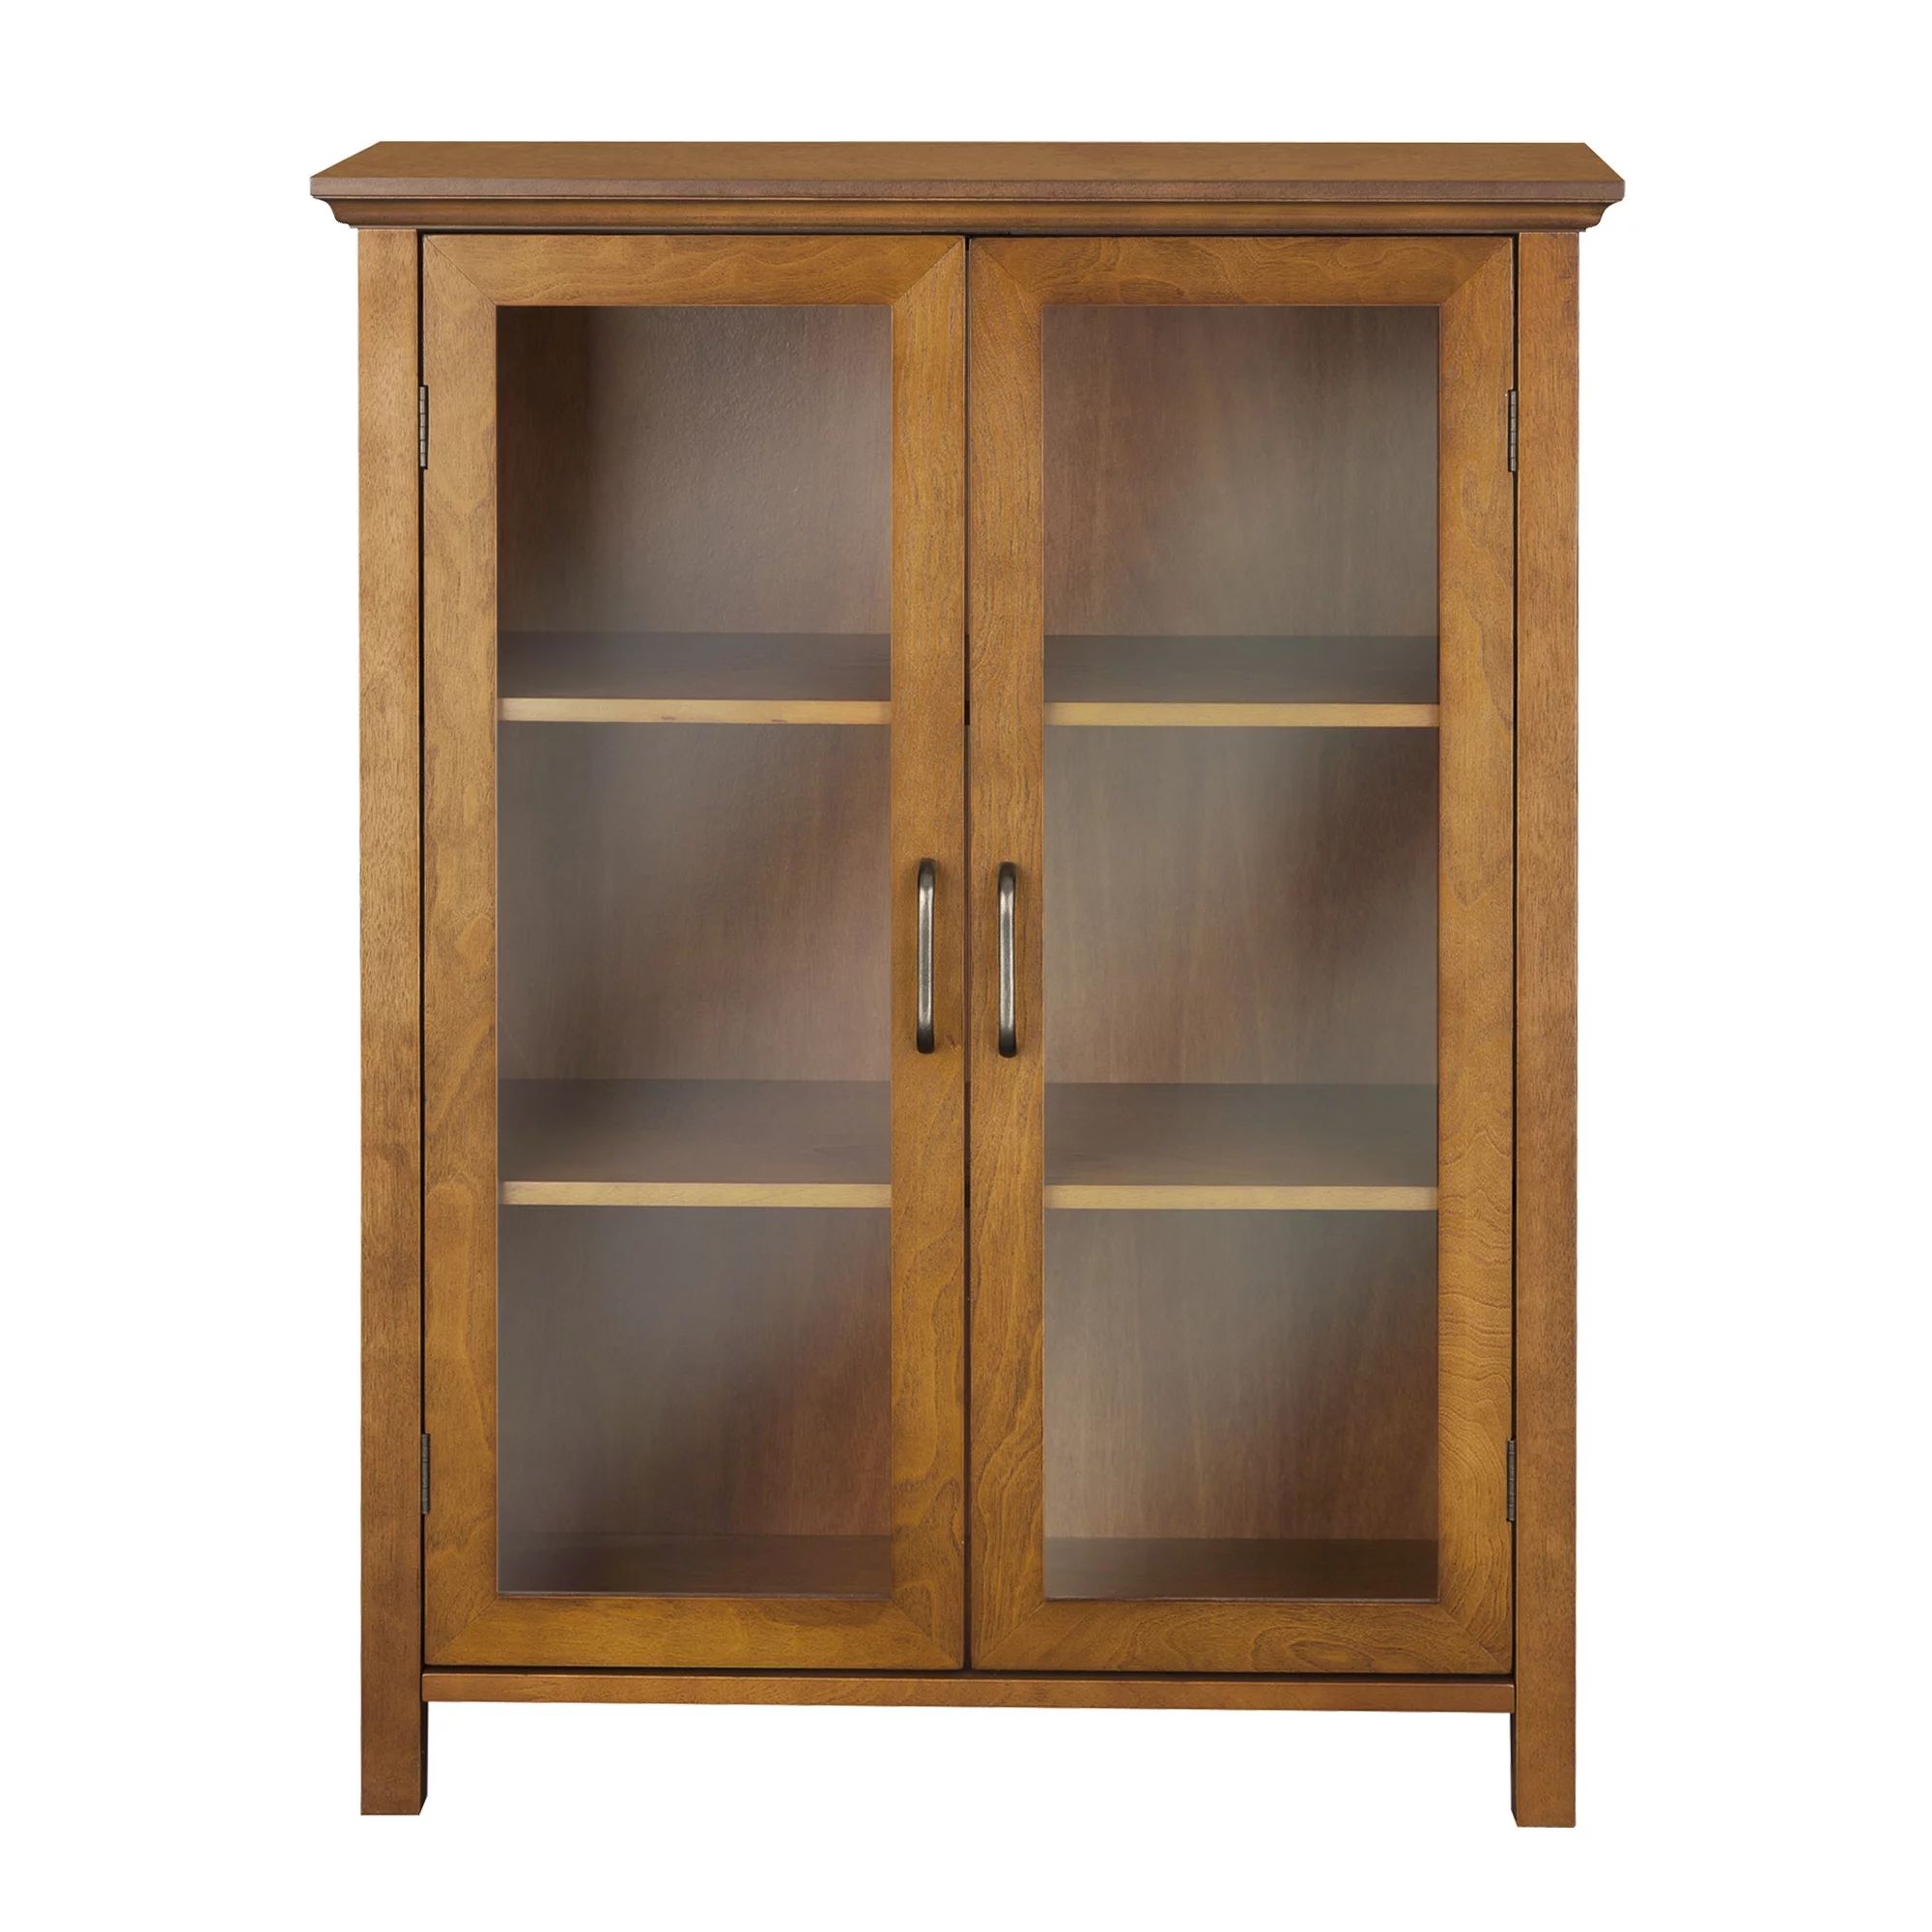 Teamson Home Avery Wooden 2 Door Floor Cabinet with Storage, Oiled Oak | Walmart (US)